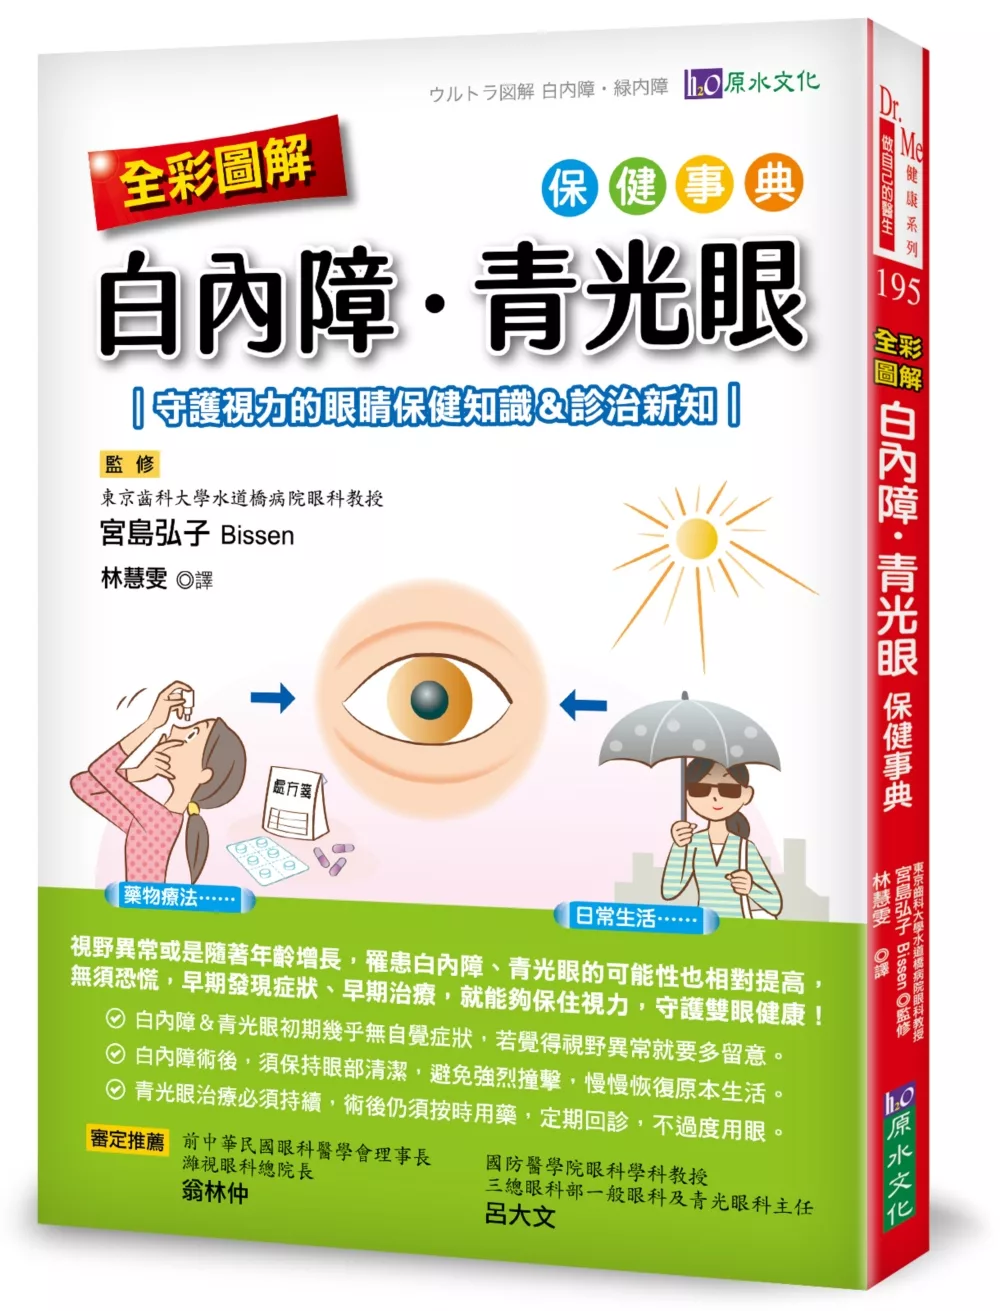 全彩圖解 白內障、青光眼保健事典 ：守護視力的眼睛保健知識&診治新知